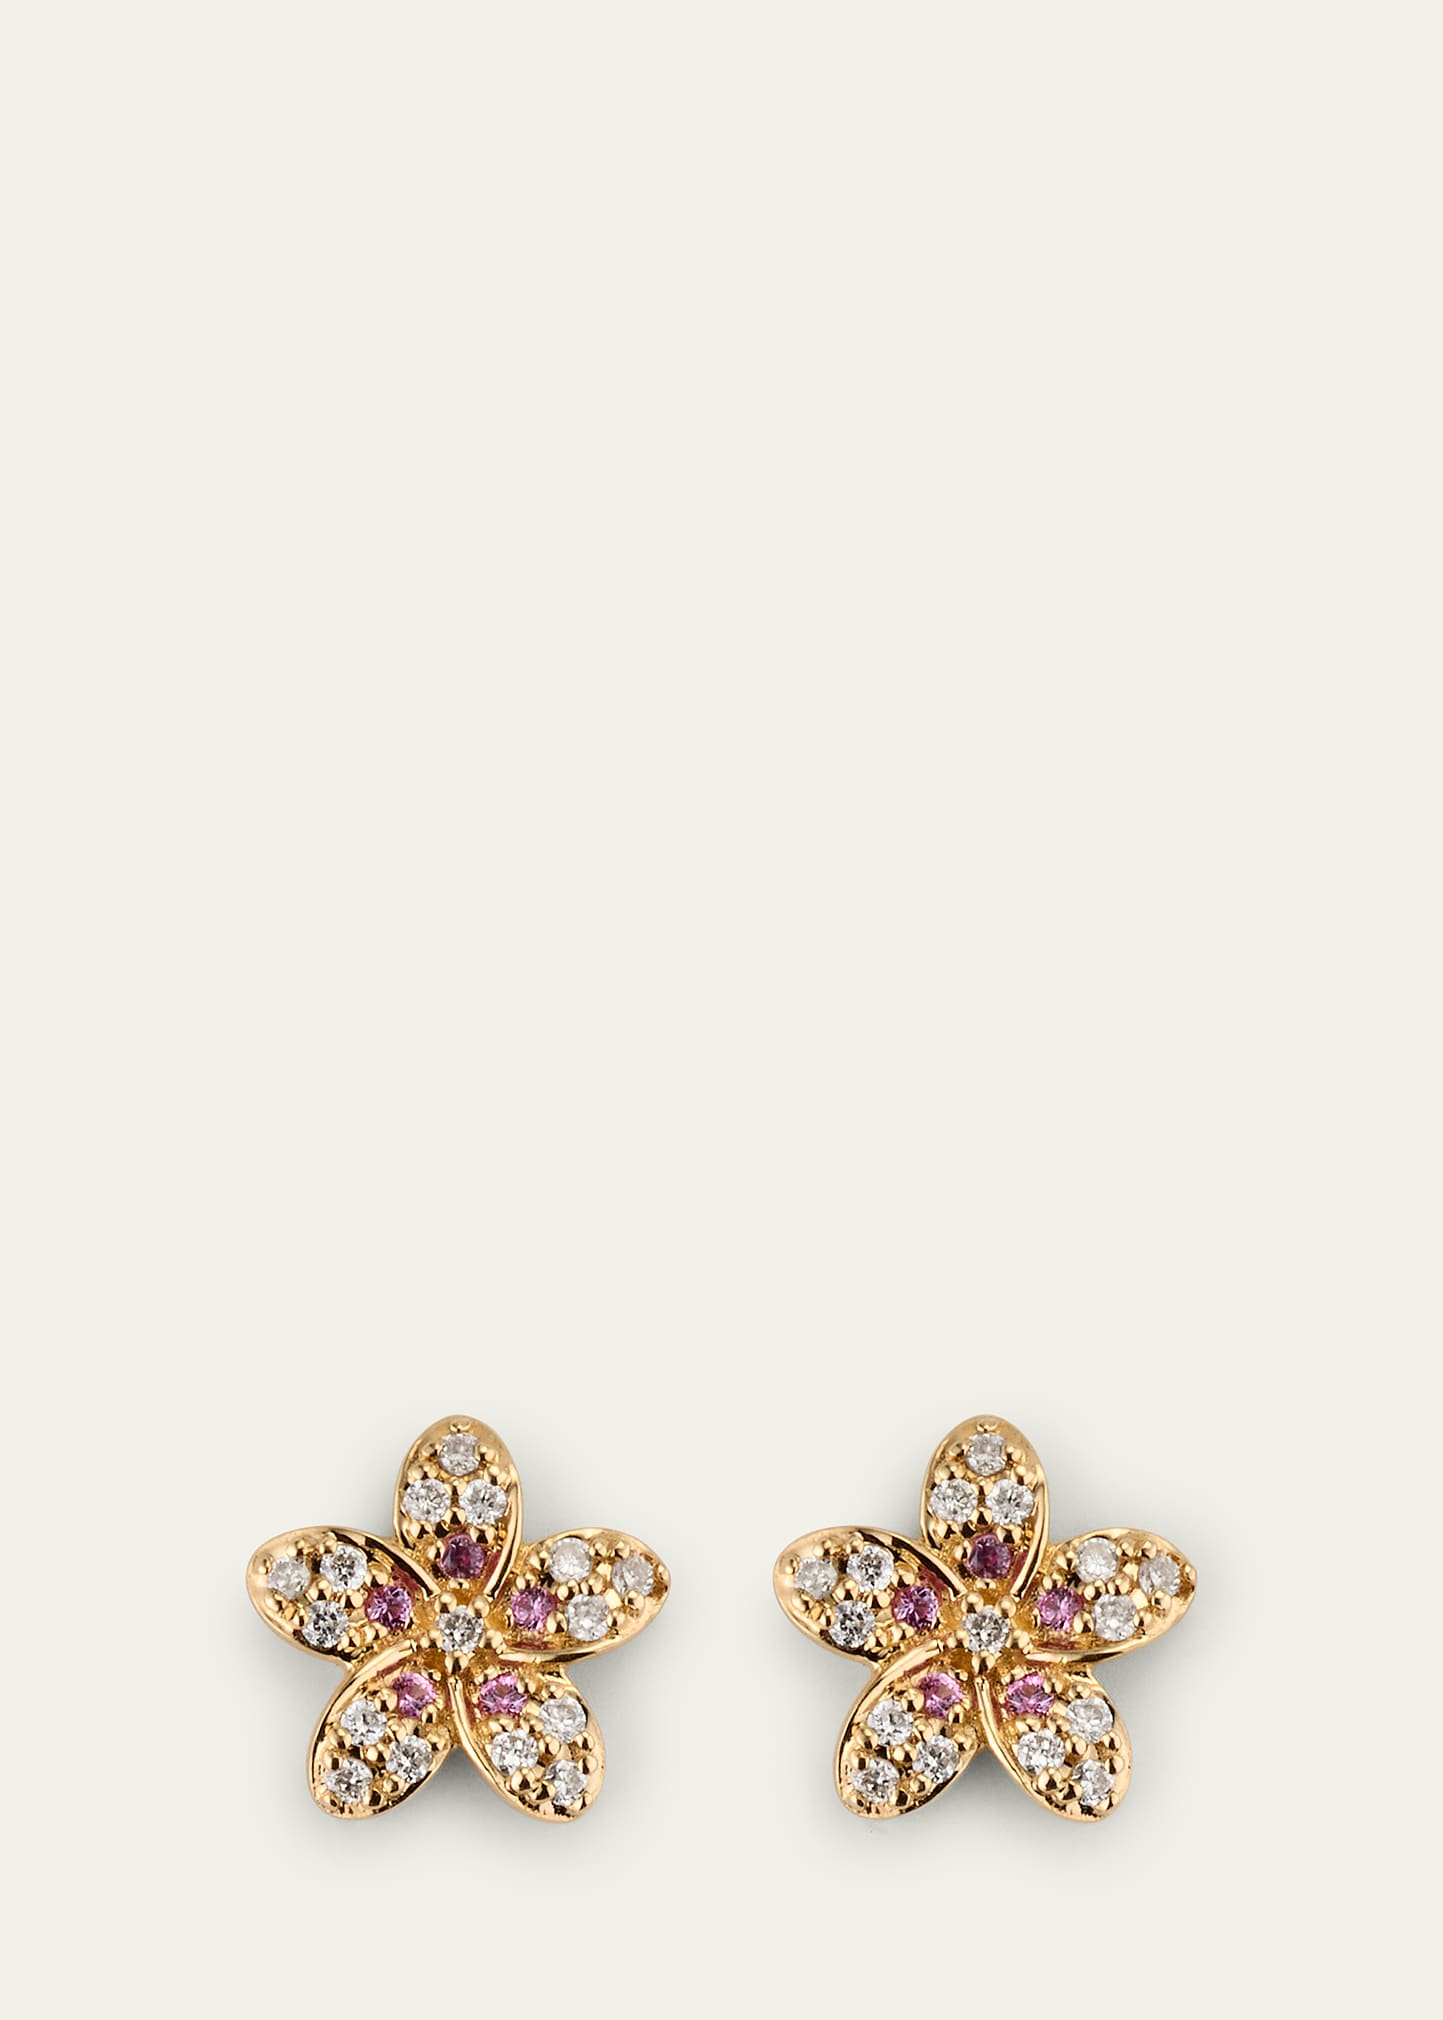 14k Diamond and Pink Sapphire Plumeria Stud Earrings